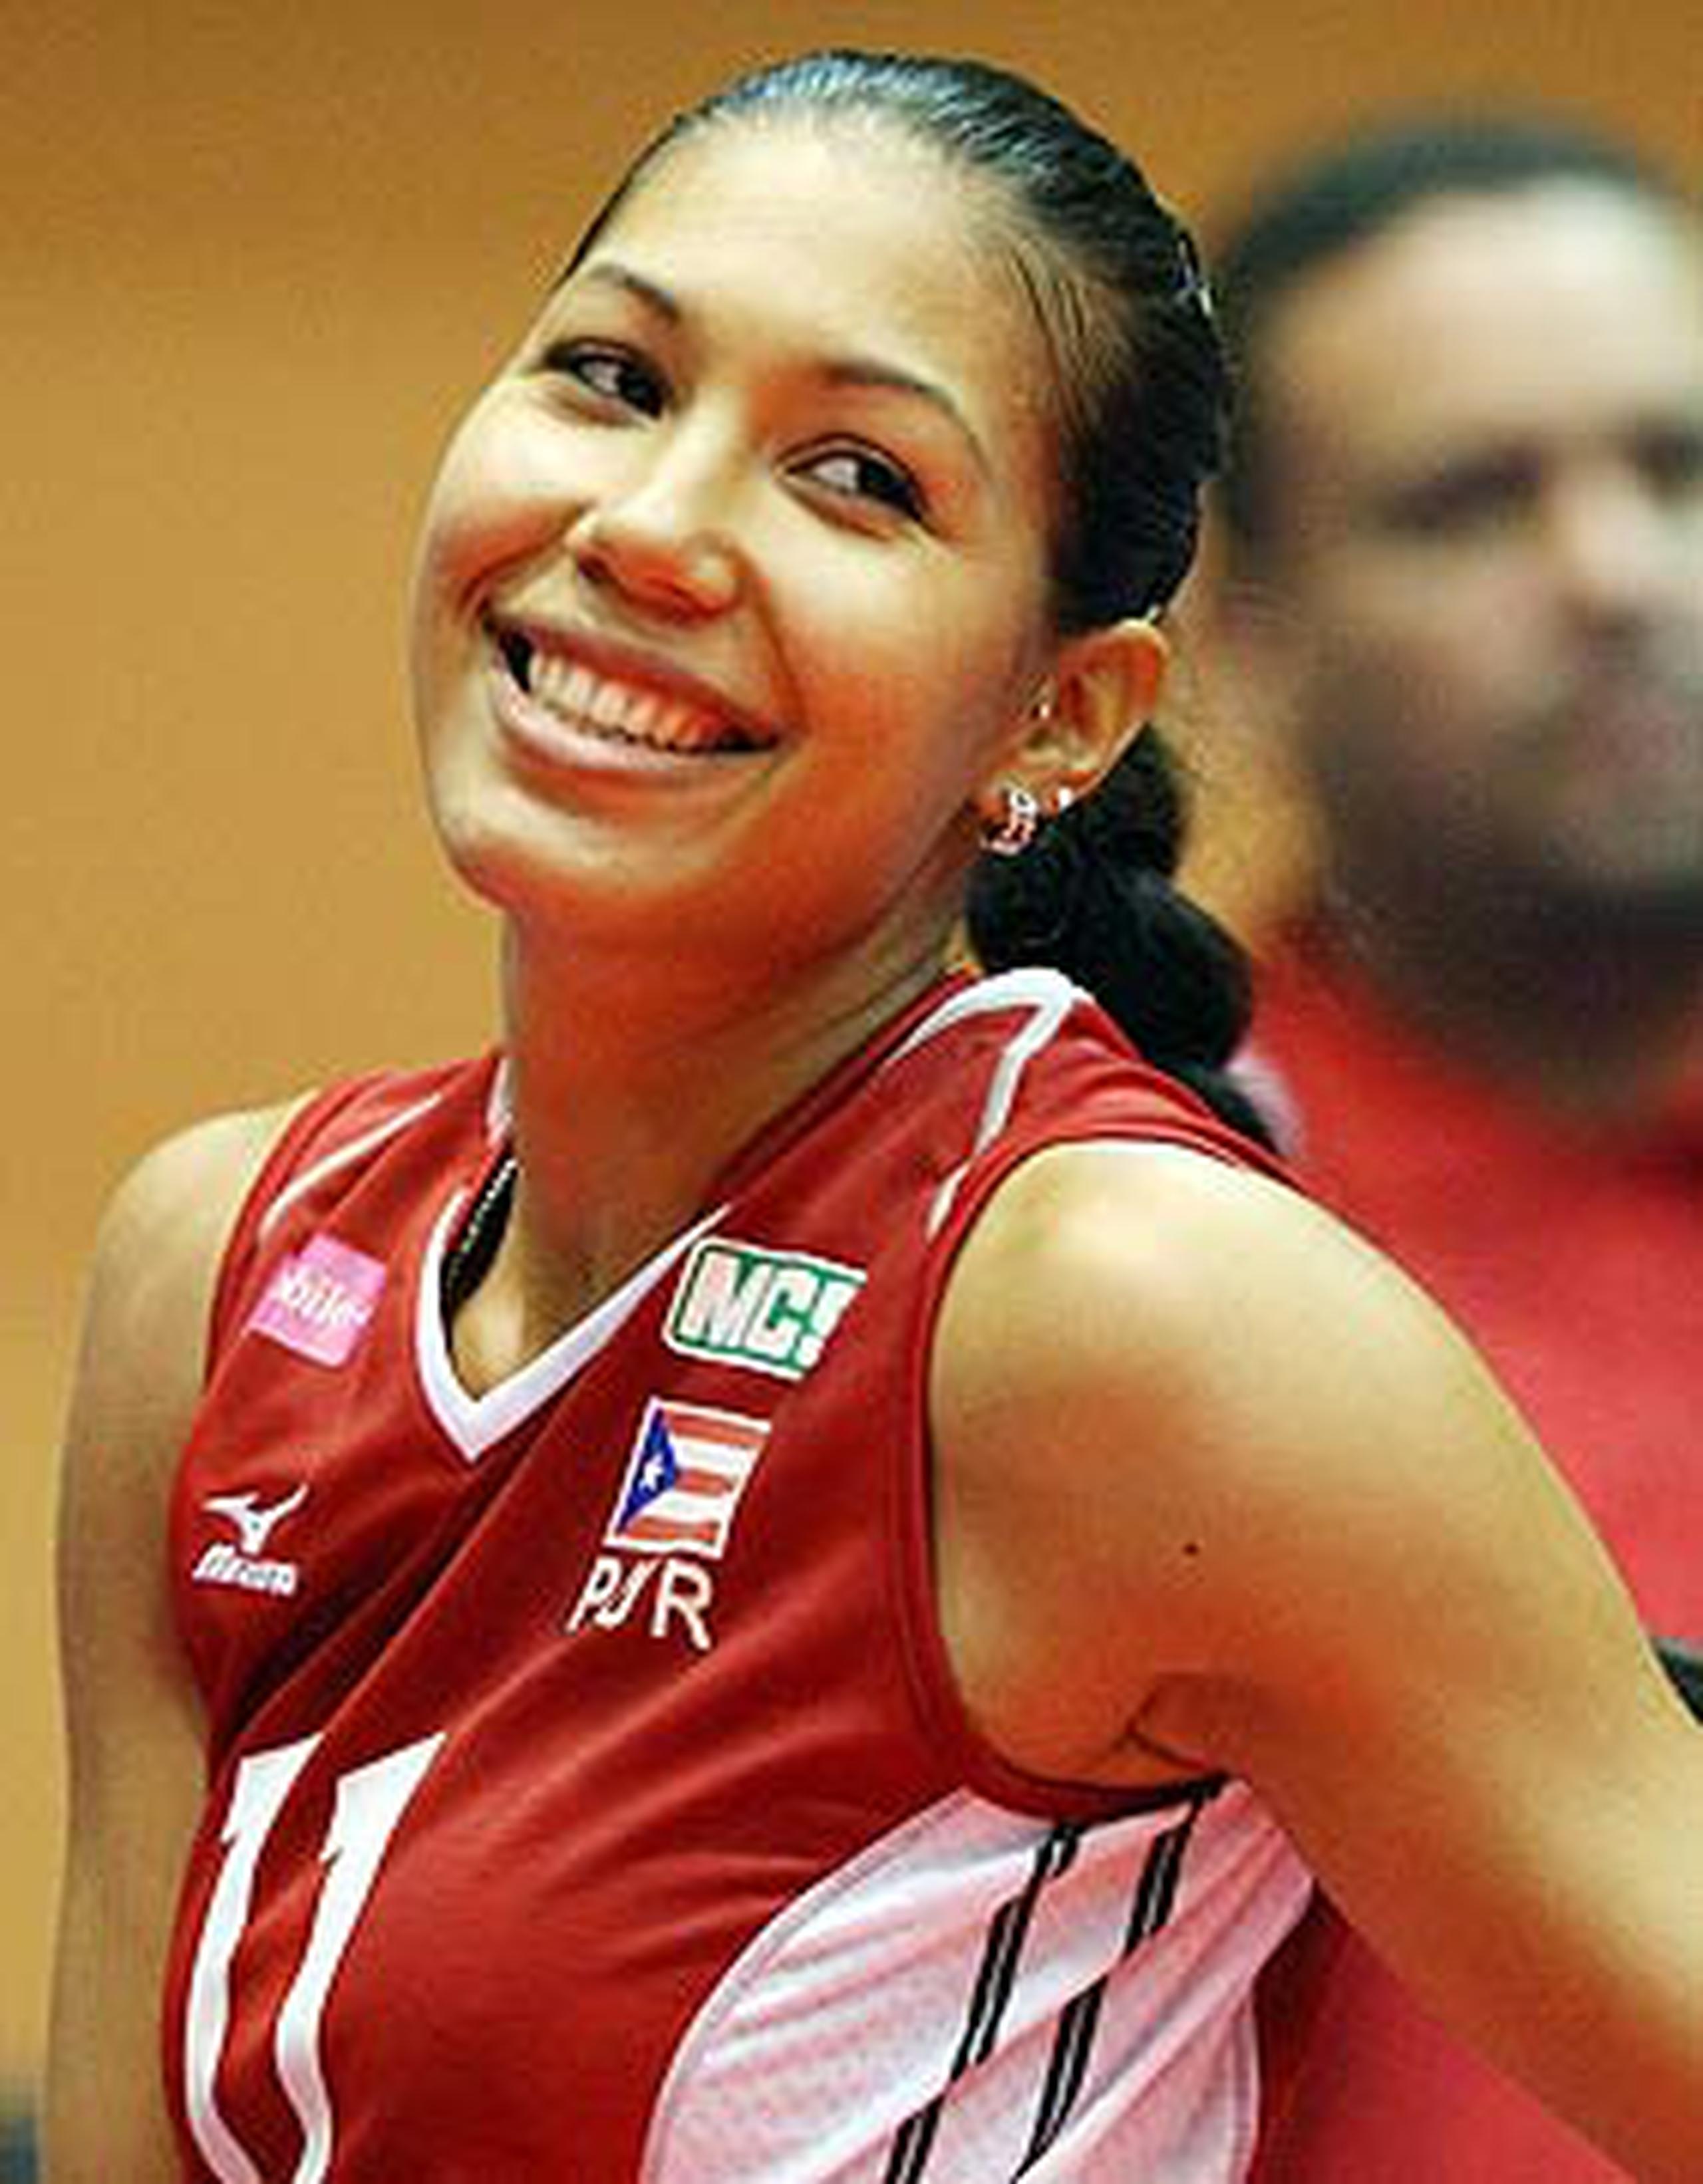 Karina será la primera voleibolista puertorriqueña en participar en la liga profesional de Turquía. (Primera Hora / Archivo / Juan Luis Martínez)